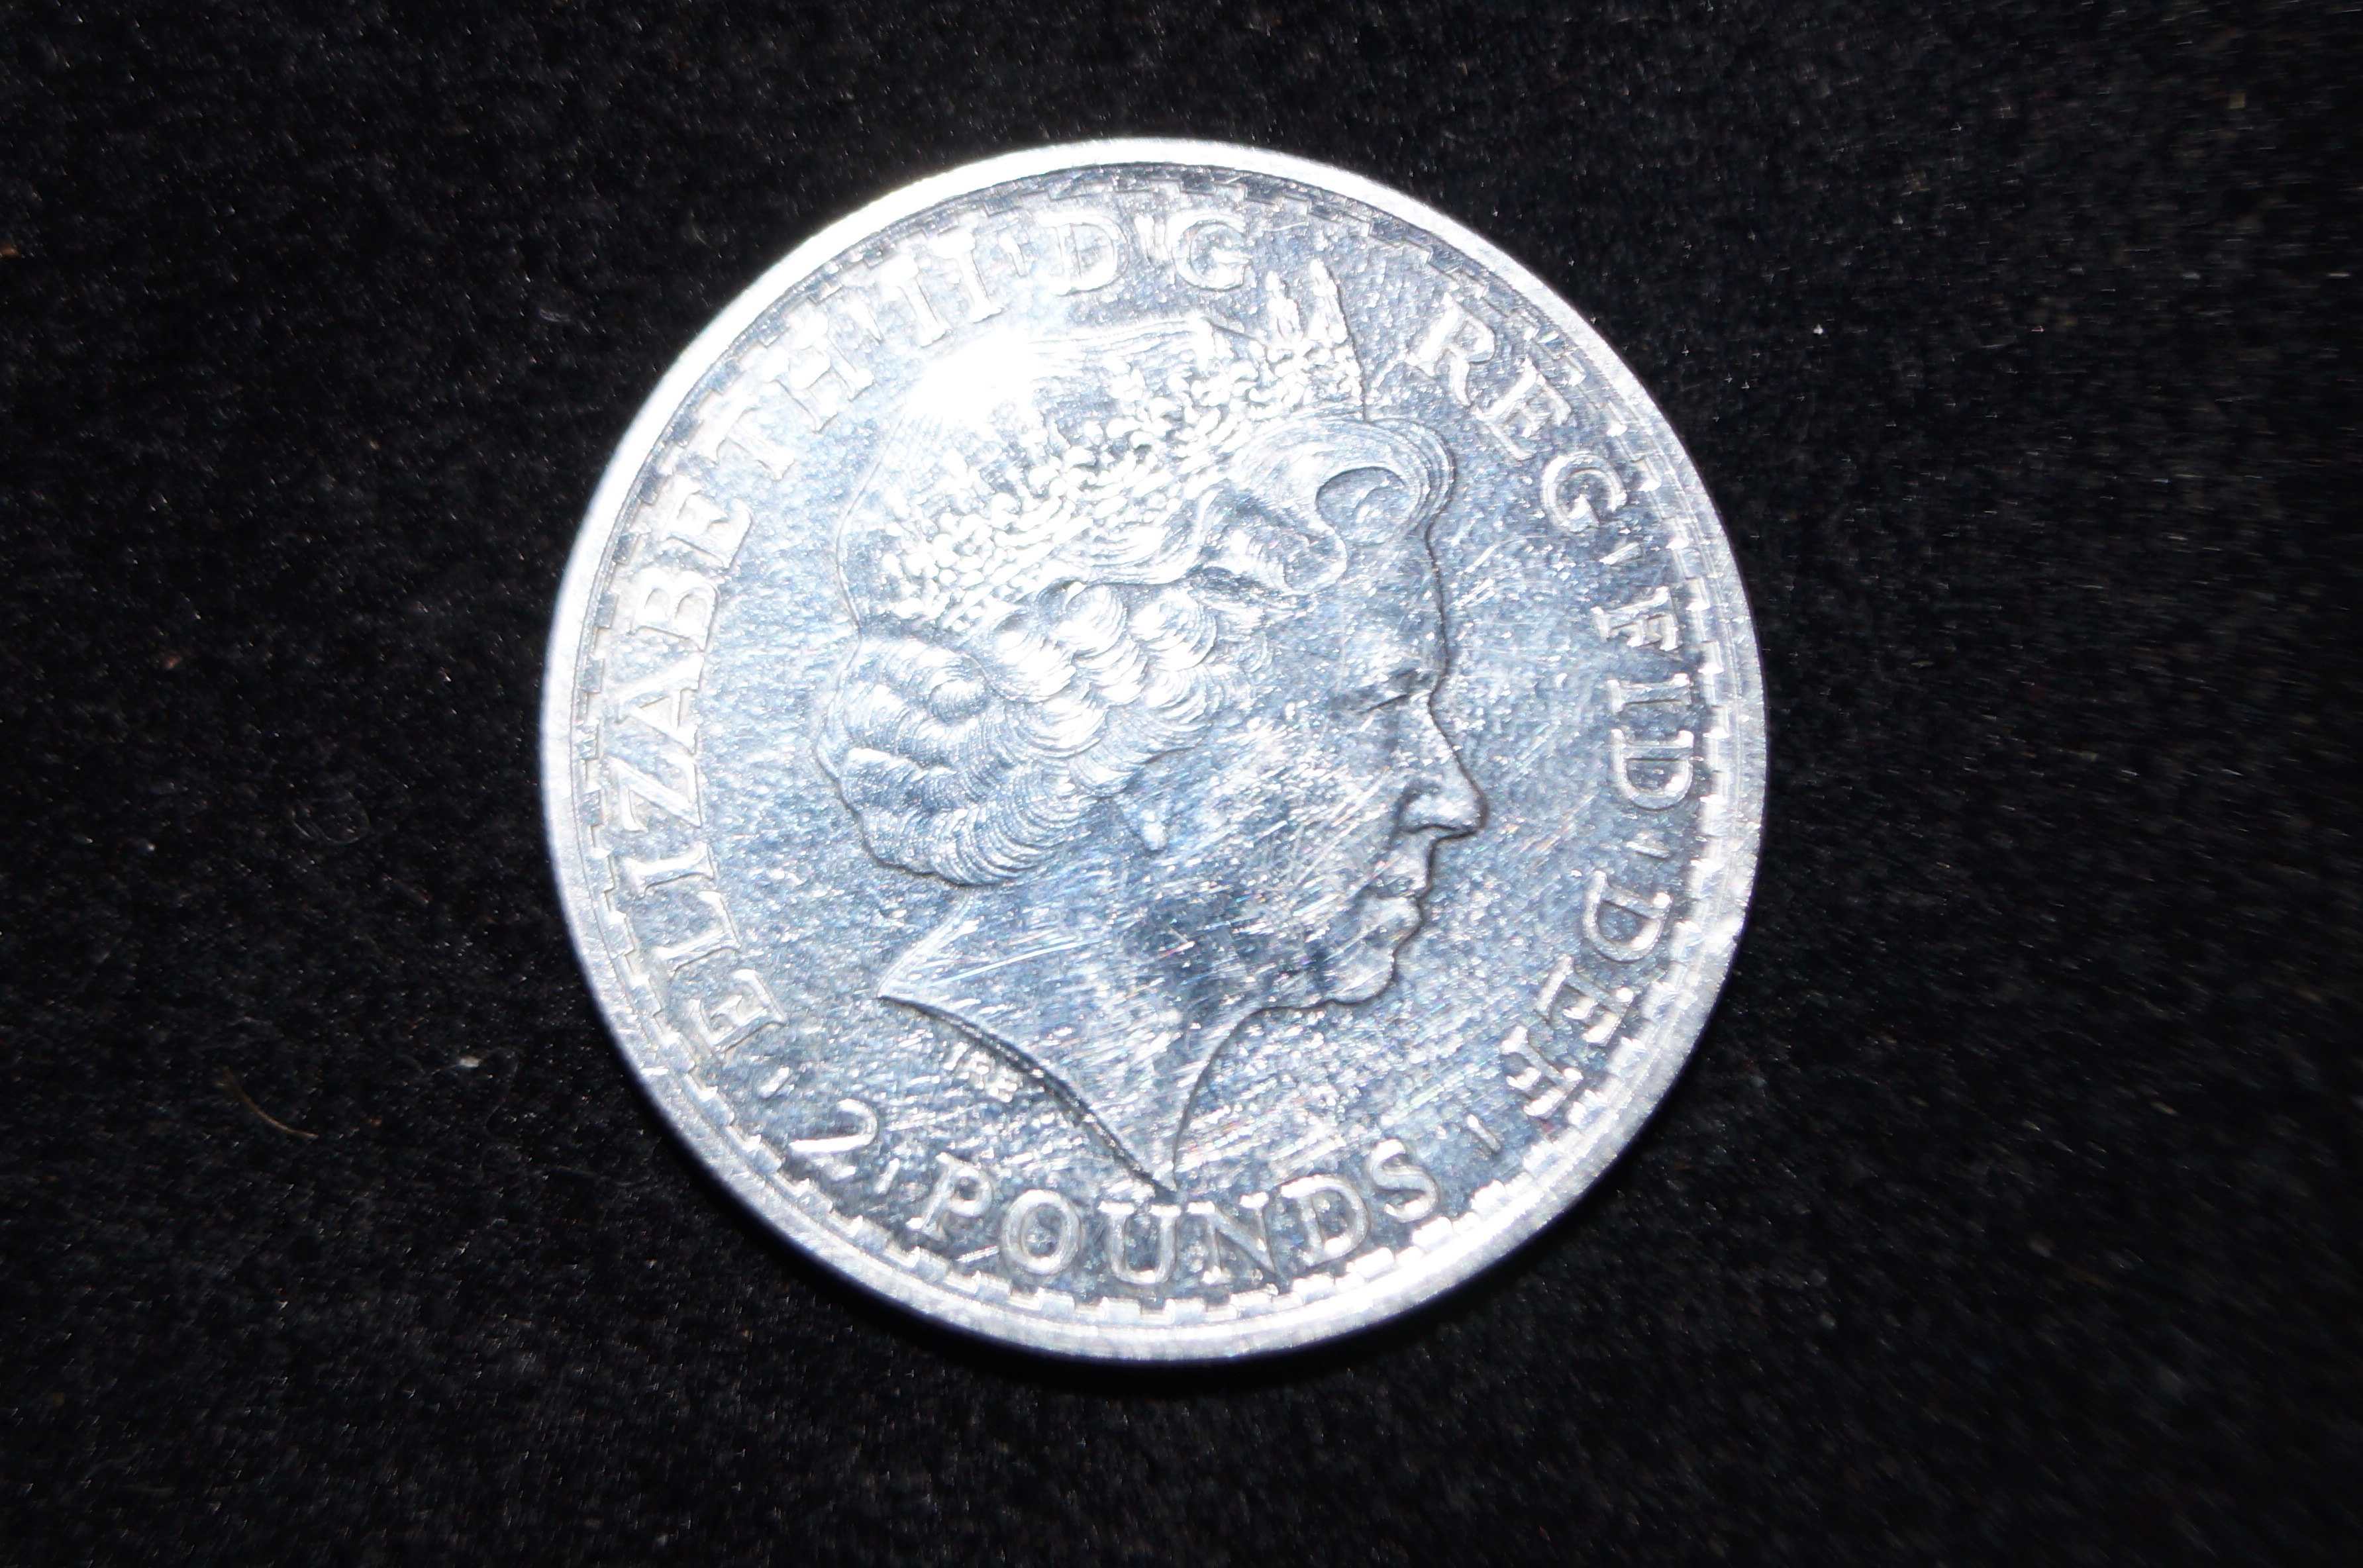 Elizabeth II 1oz silver coin